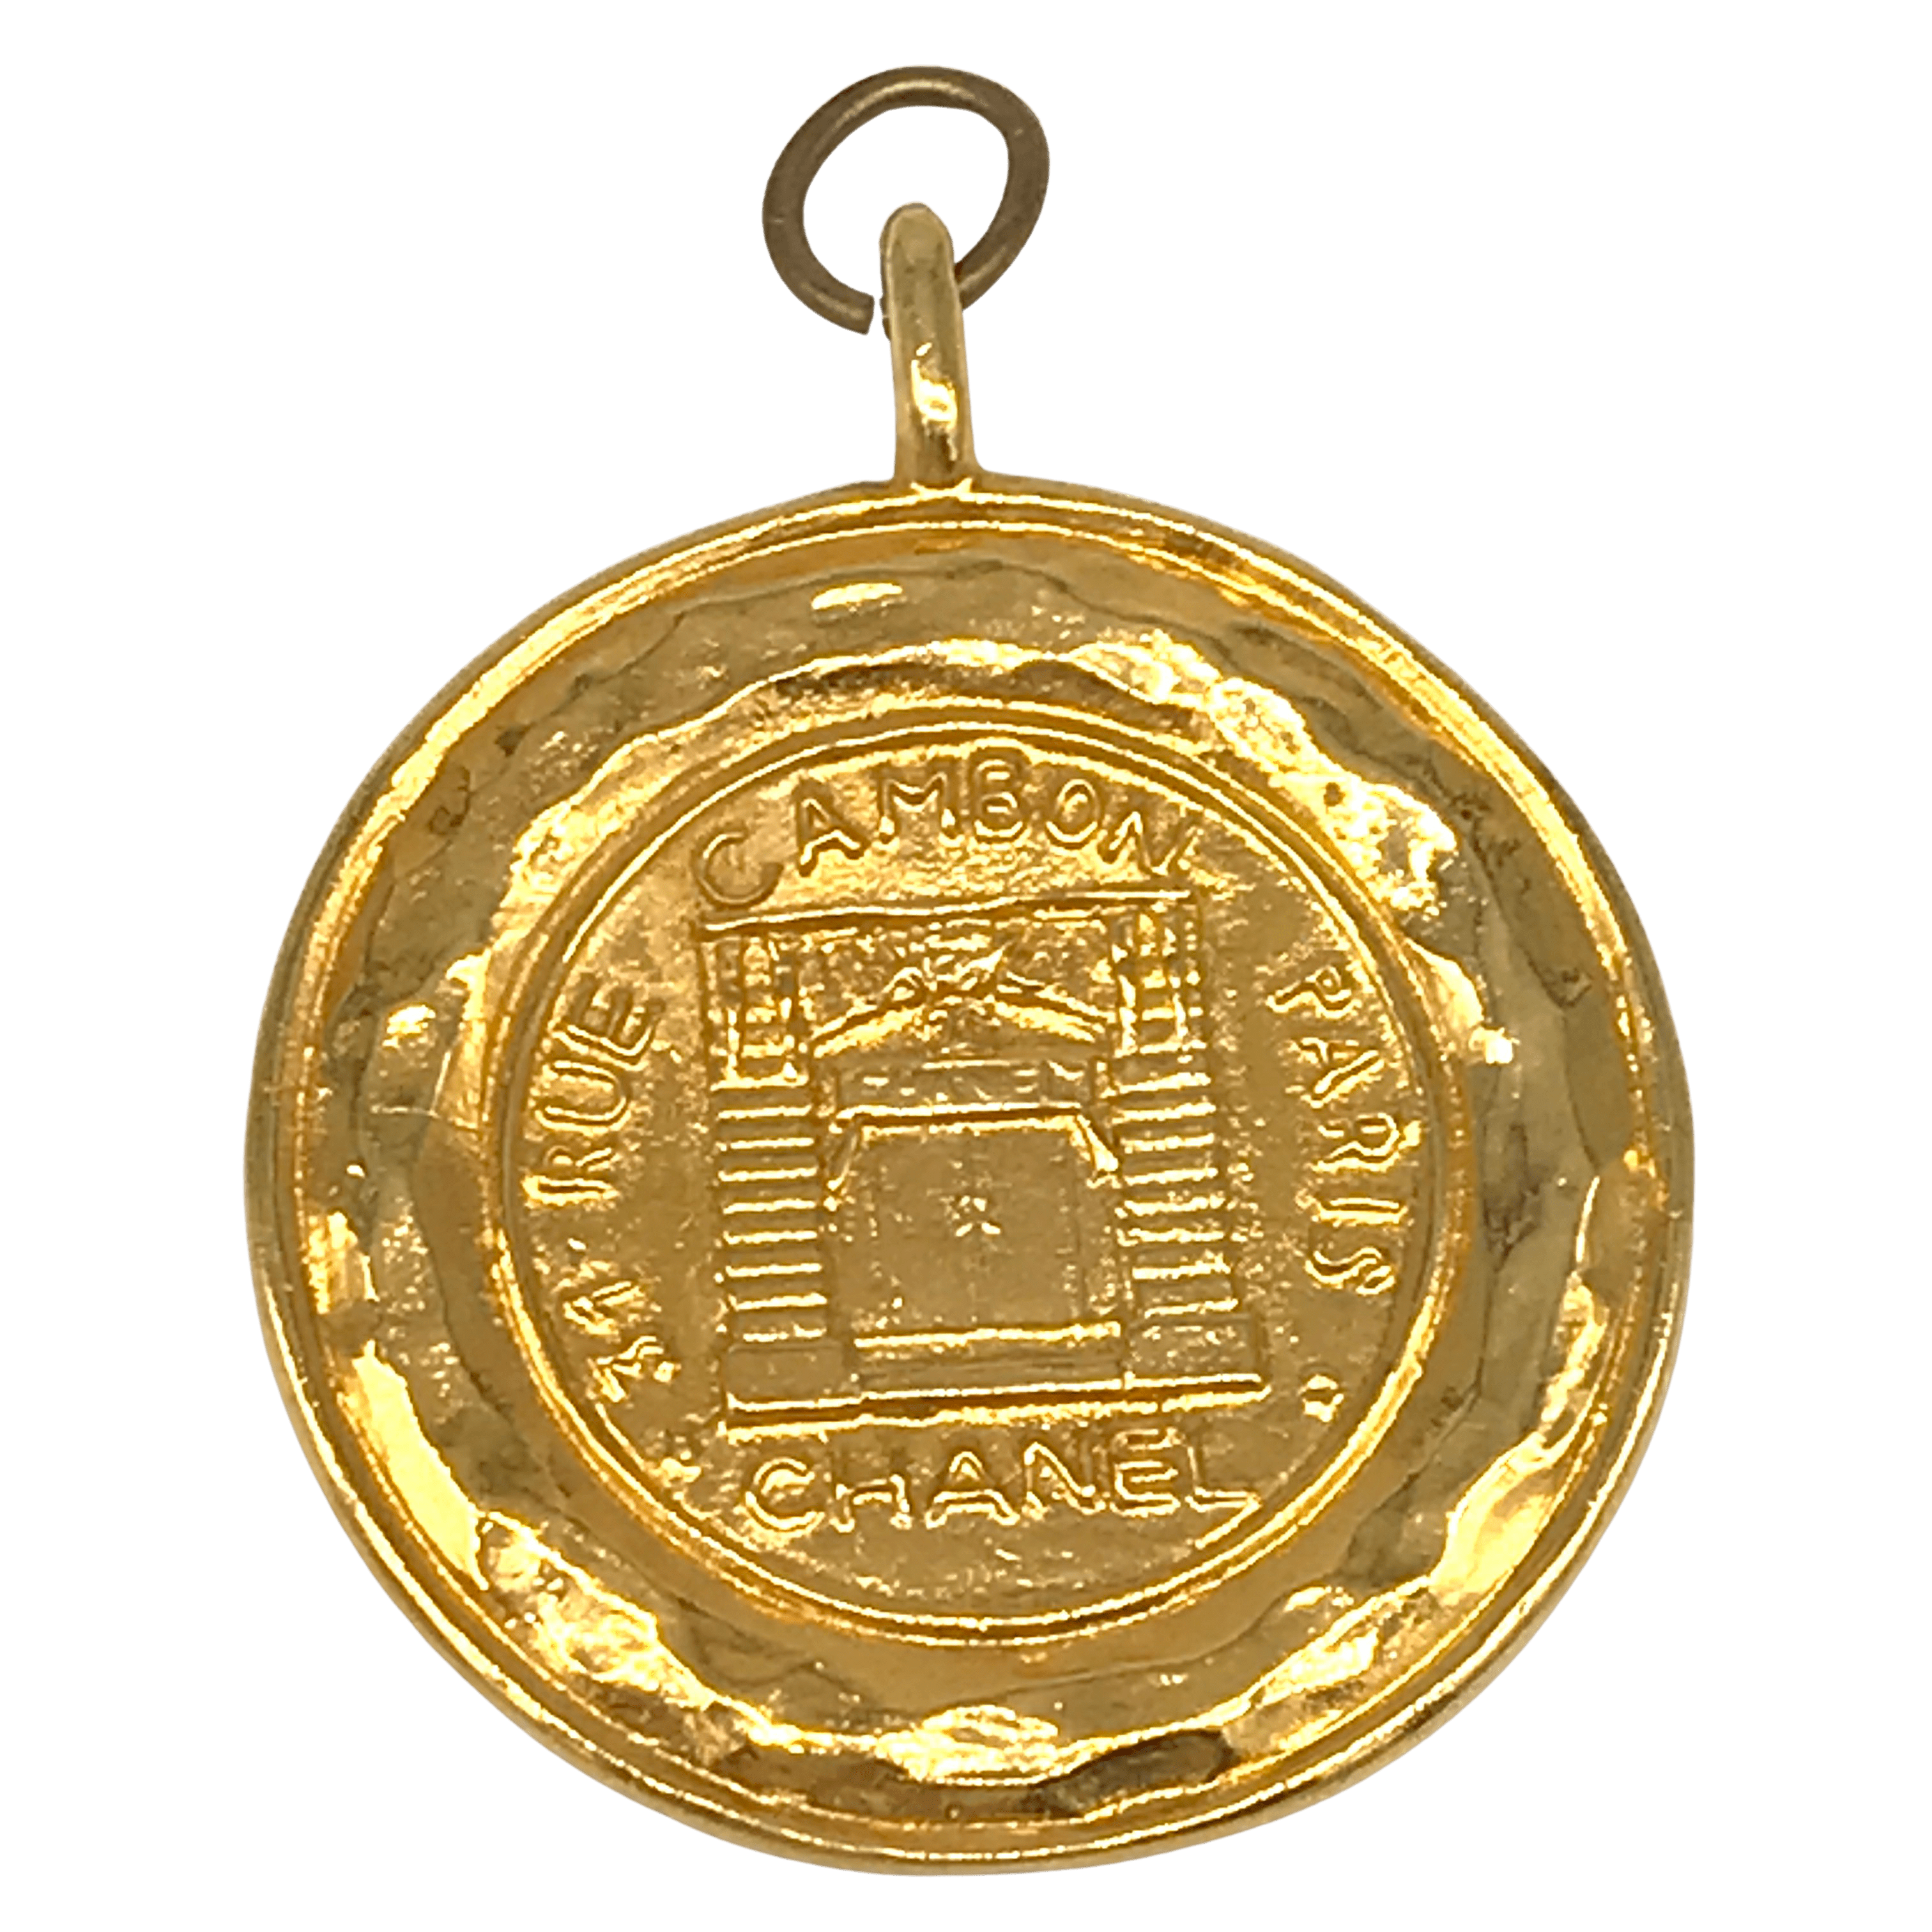 Vintage Chanel Medallion